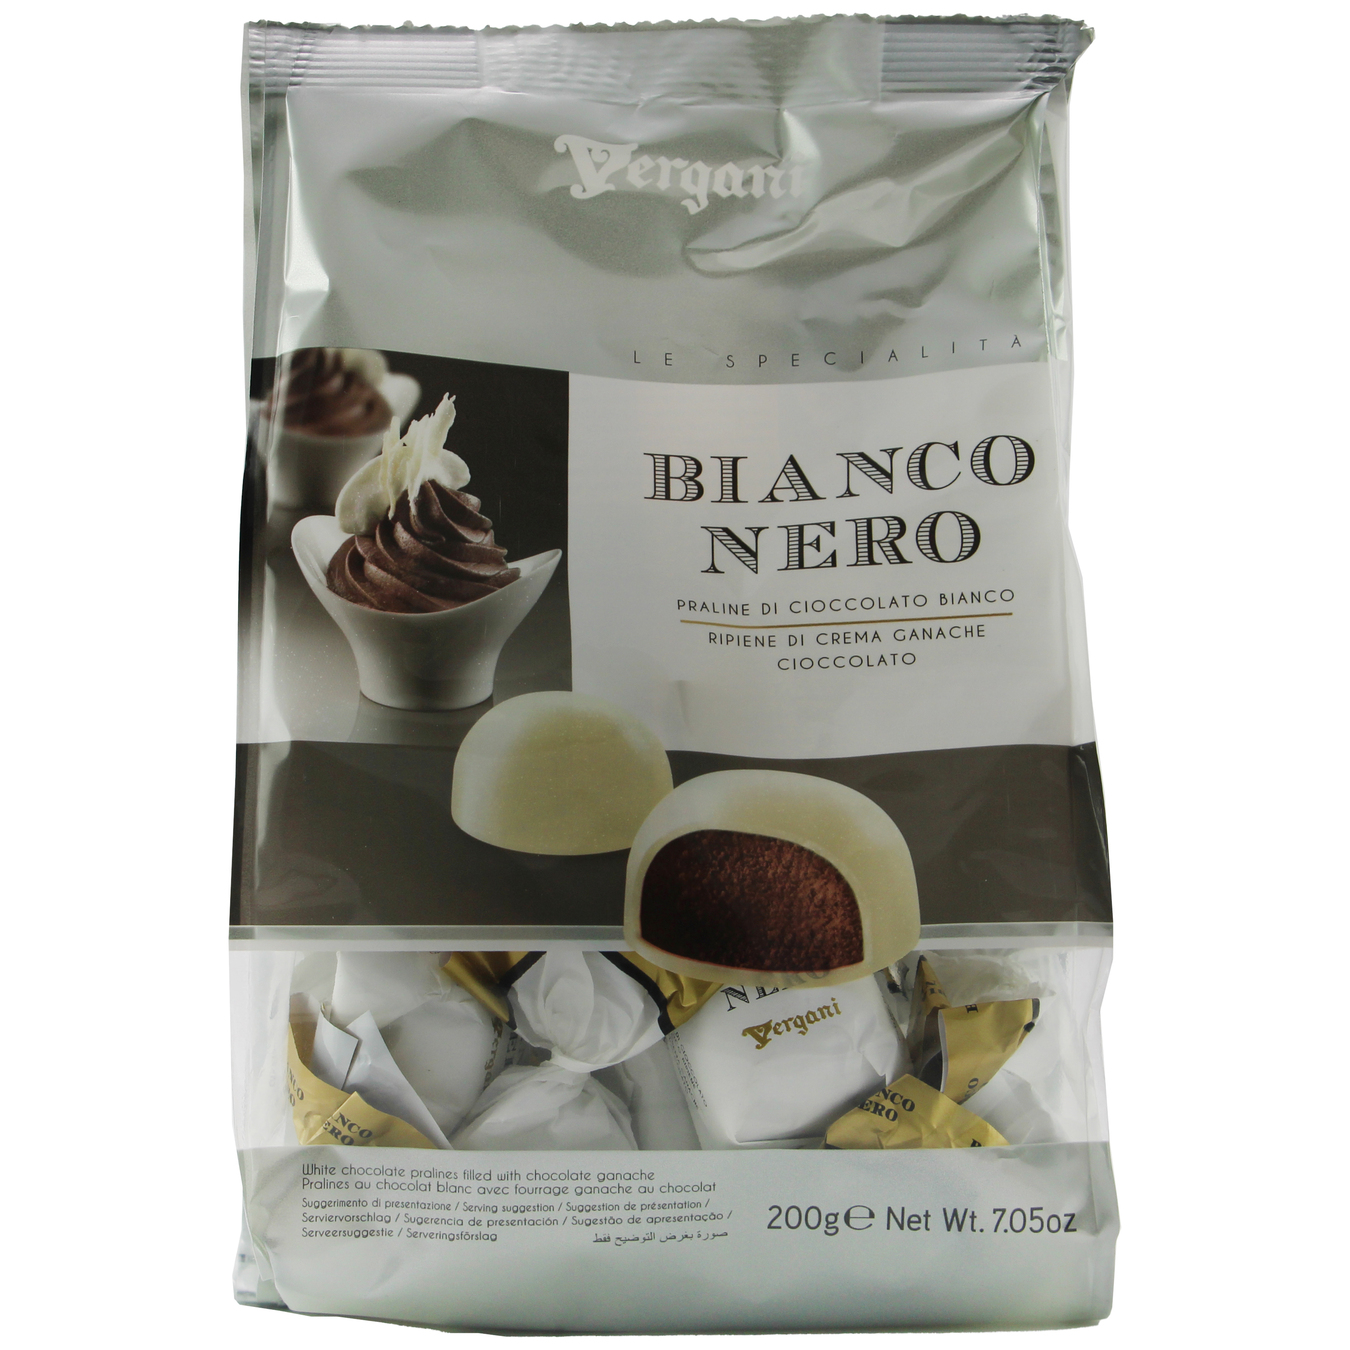 Candies Vergani Bianco&Nero With Chocolate Ganache Filling In White Chocolate 200g